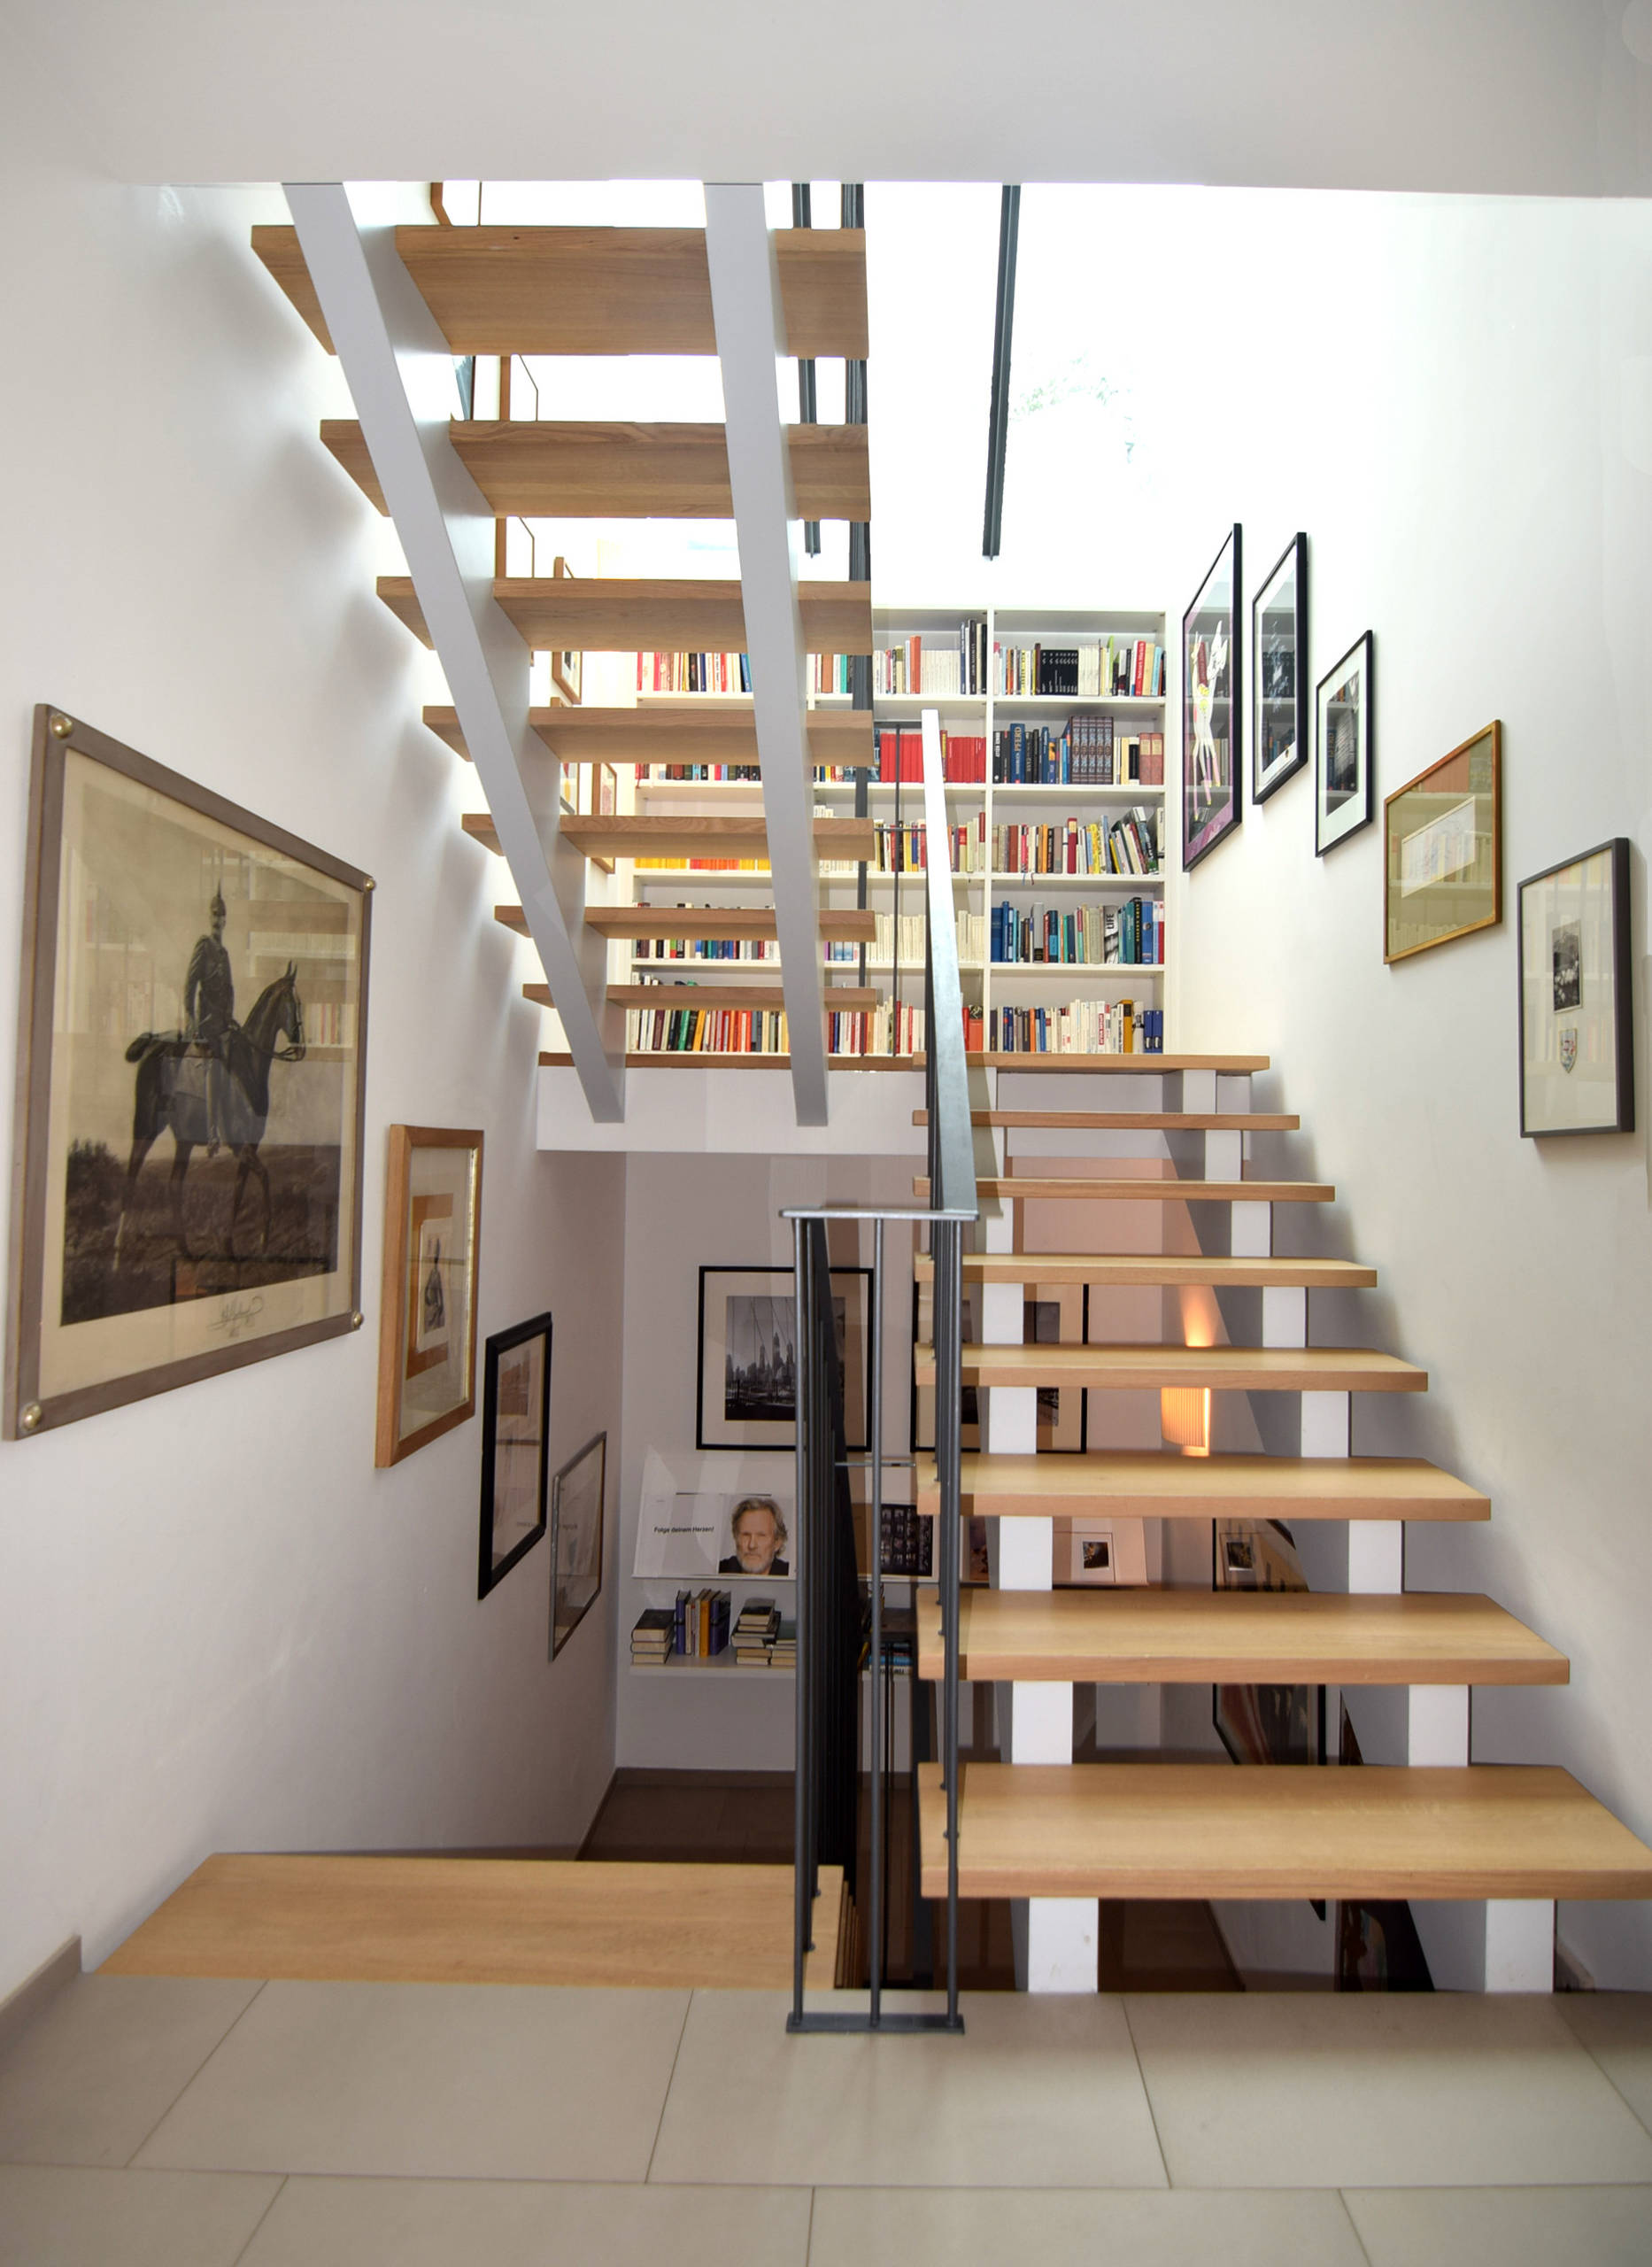 Treppenhaus gestalten: Tolle Ideen für einen Aufgang mit Stil